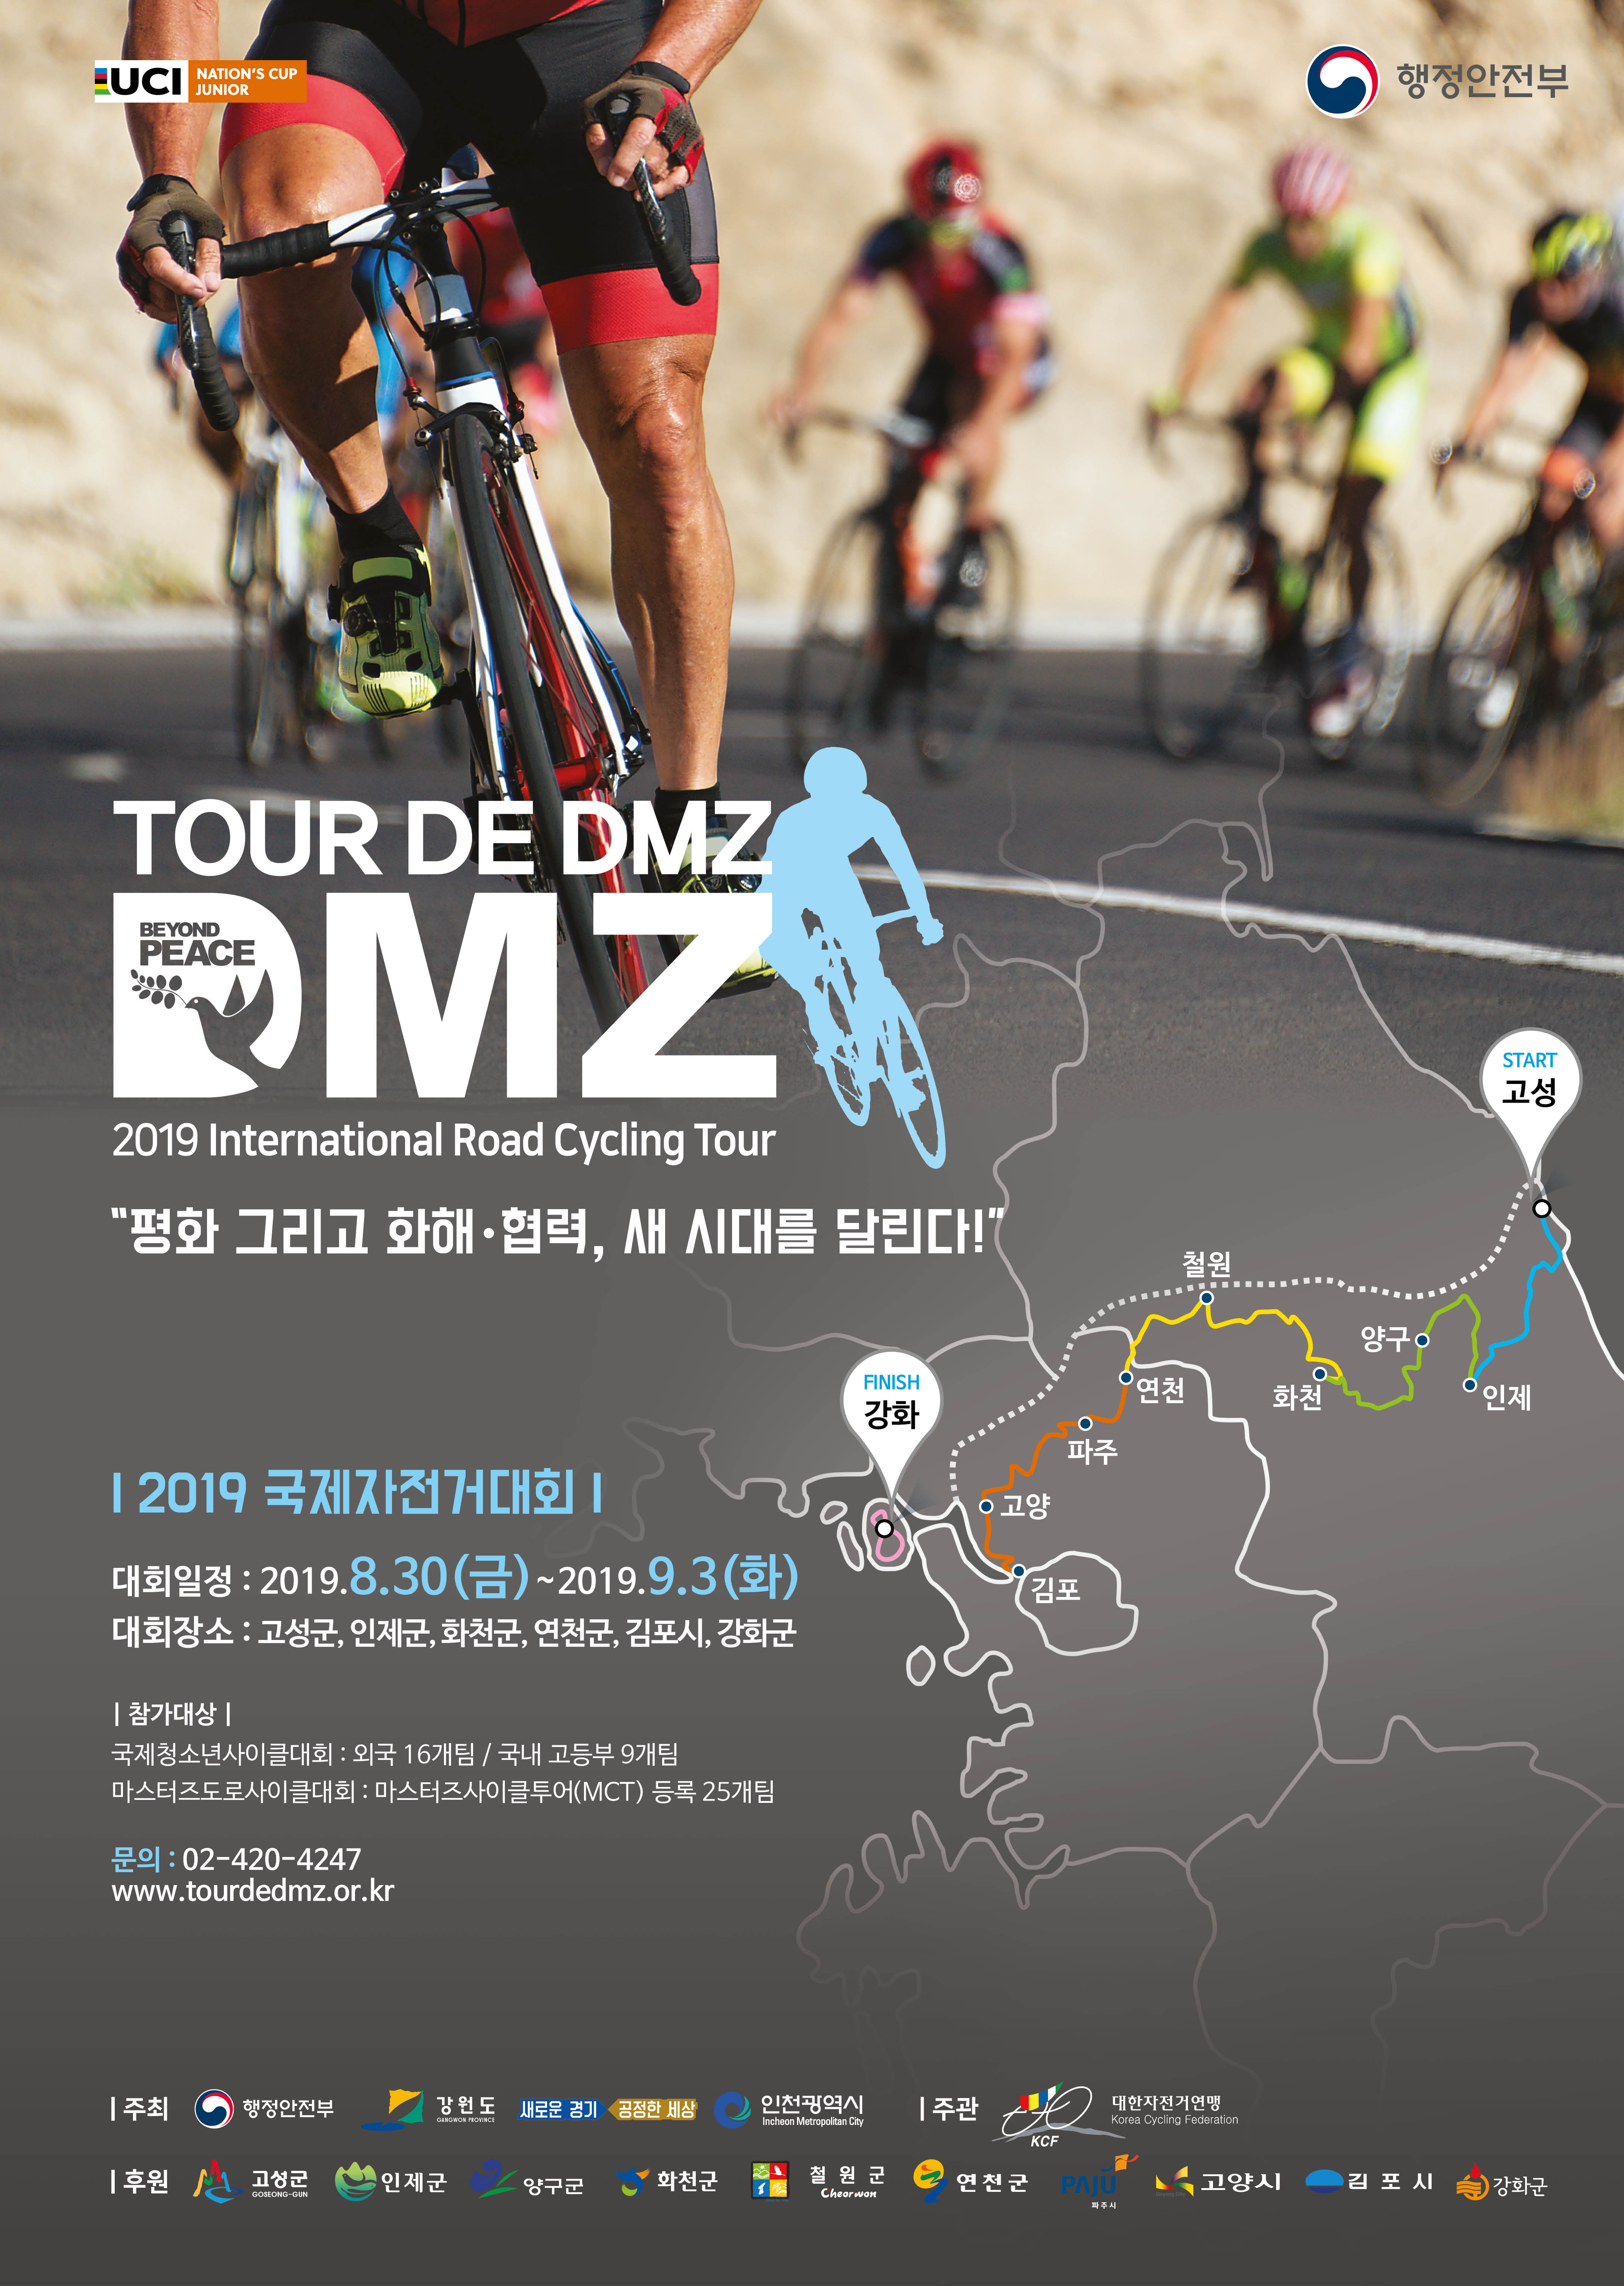 「Tour de DMZ 2019」 국제자전거대회 개최0